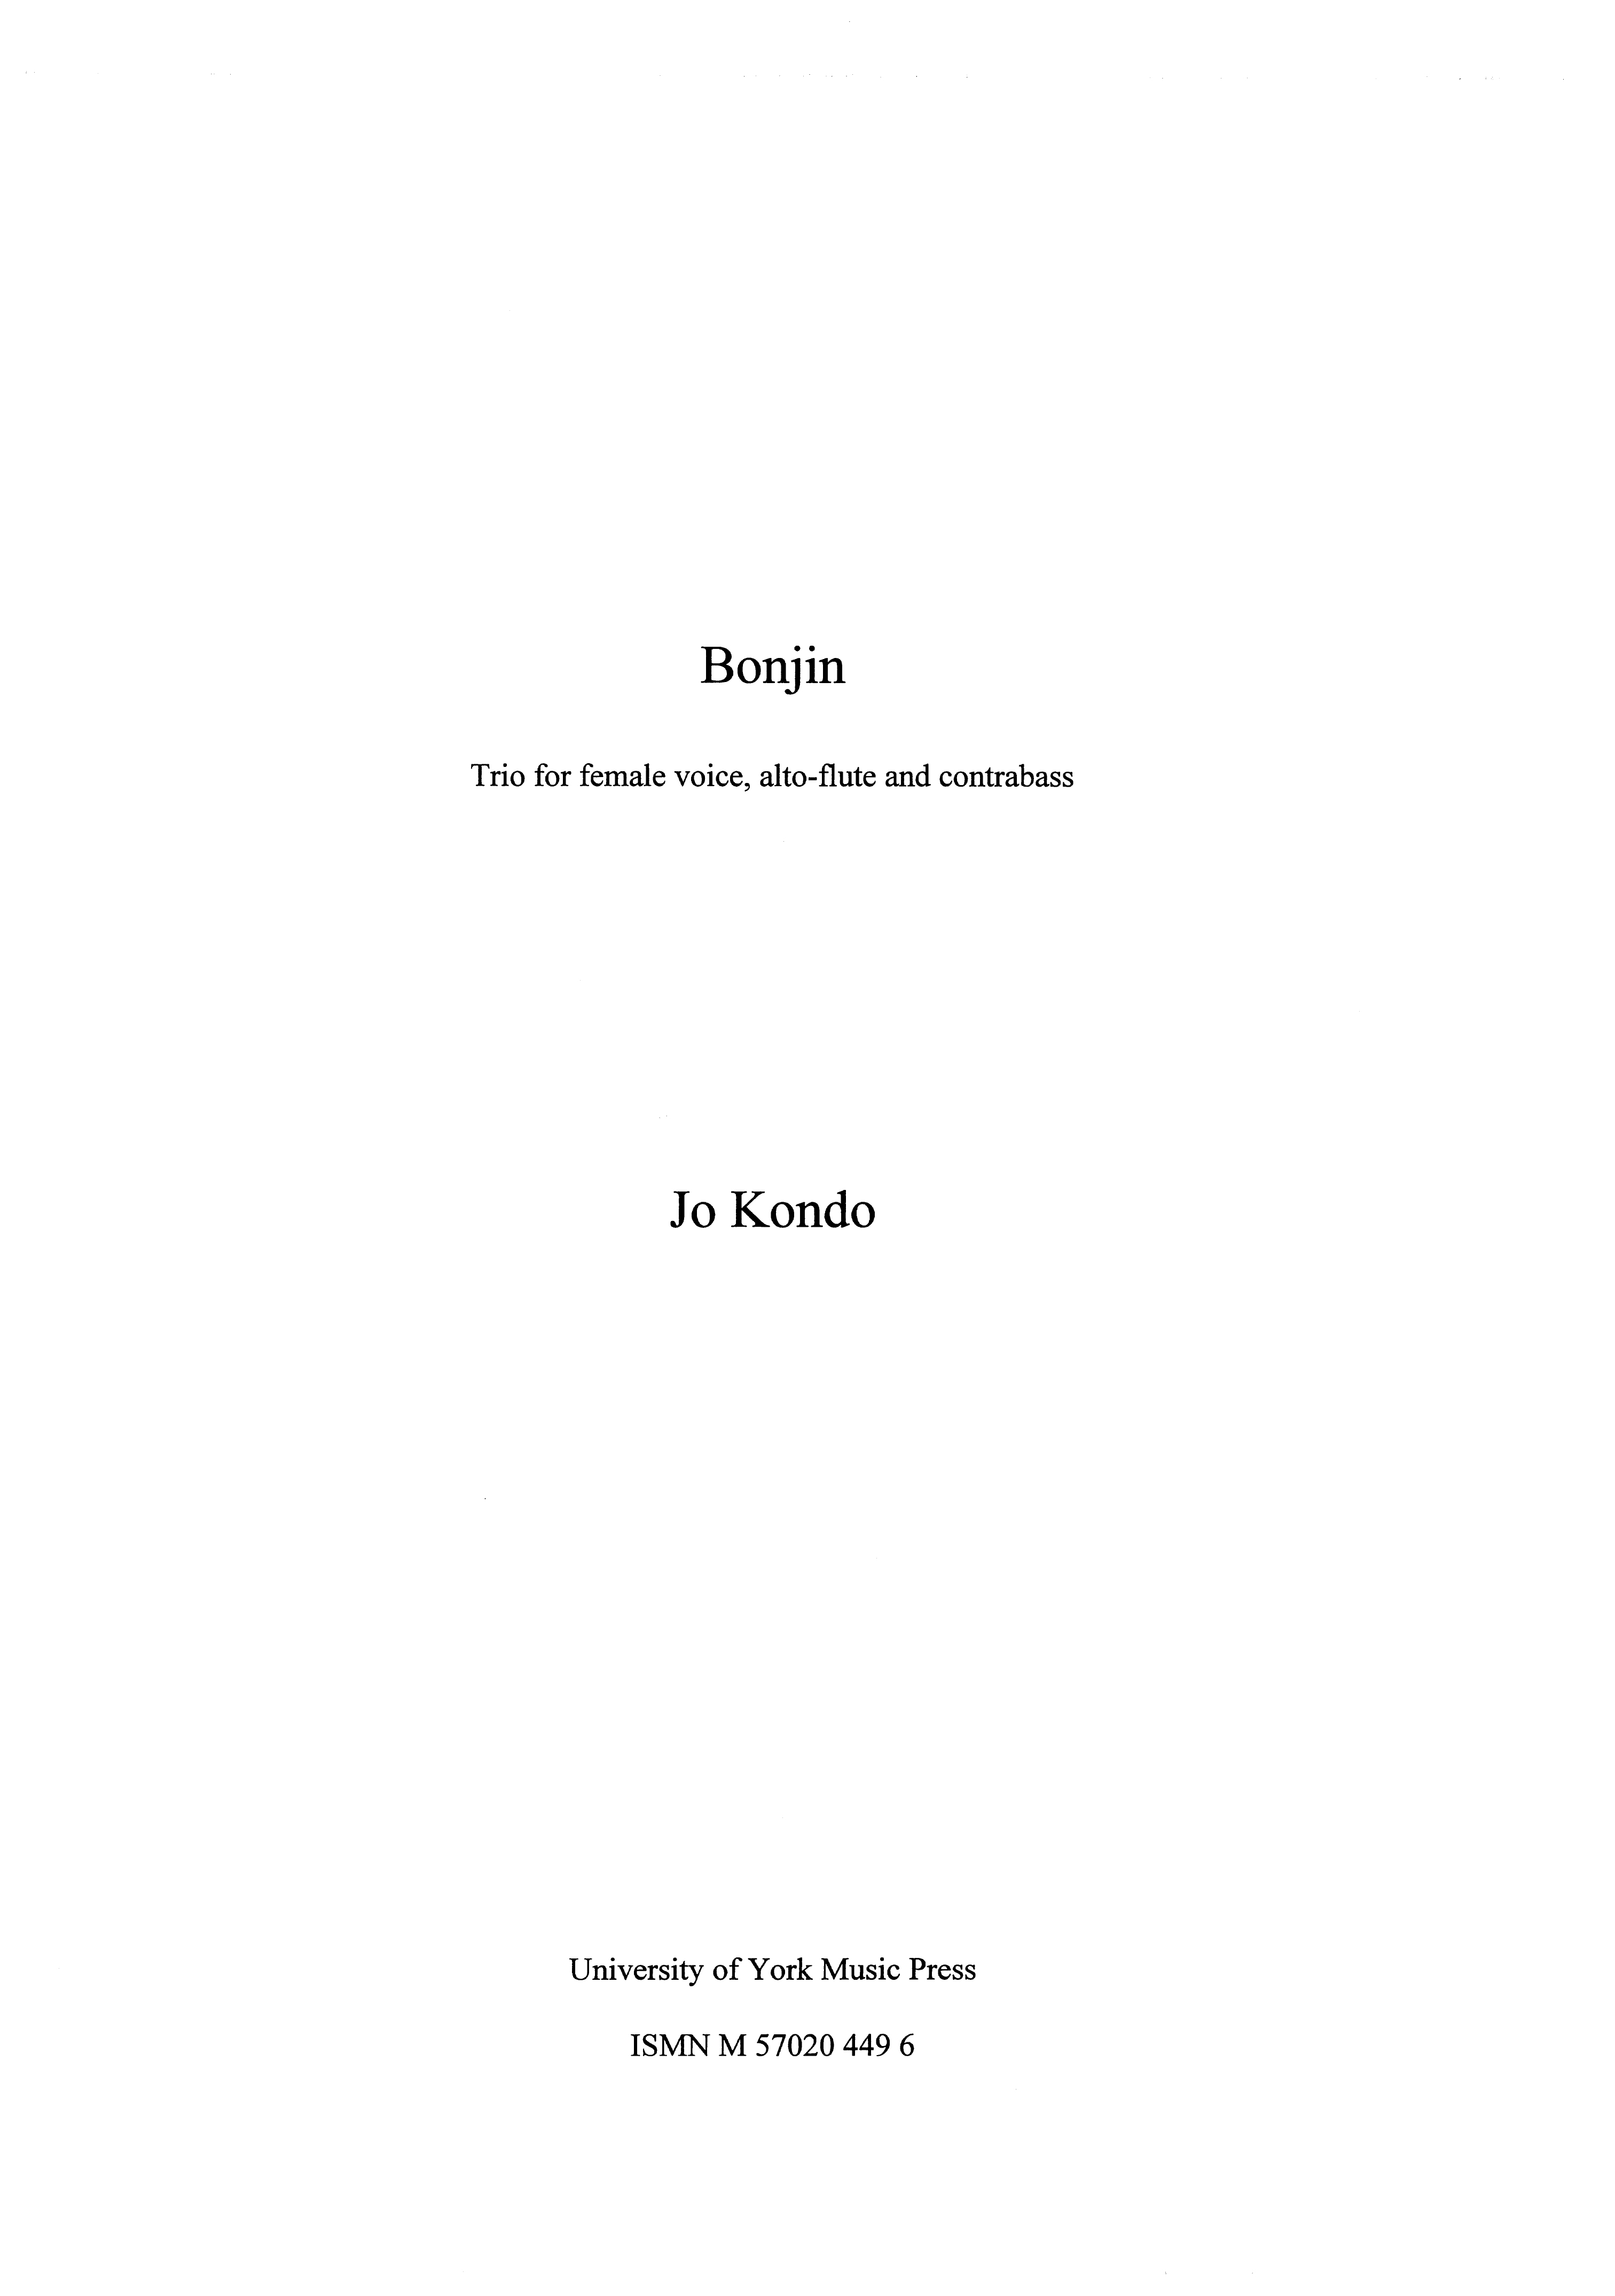 Jo Kondo: Bonjin: Chamber Ensemble: Score and Parts